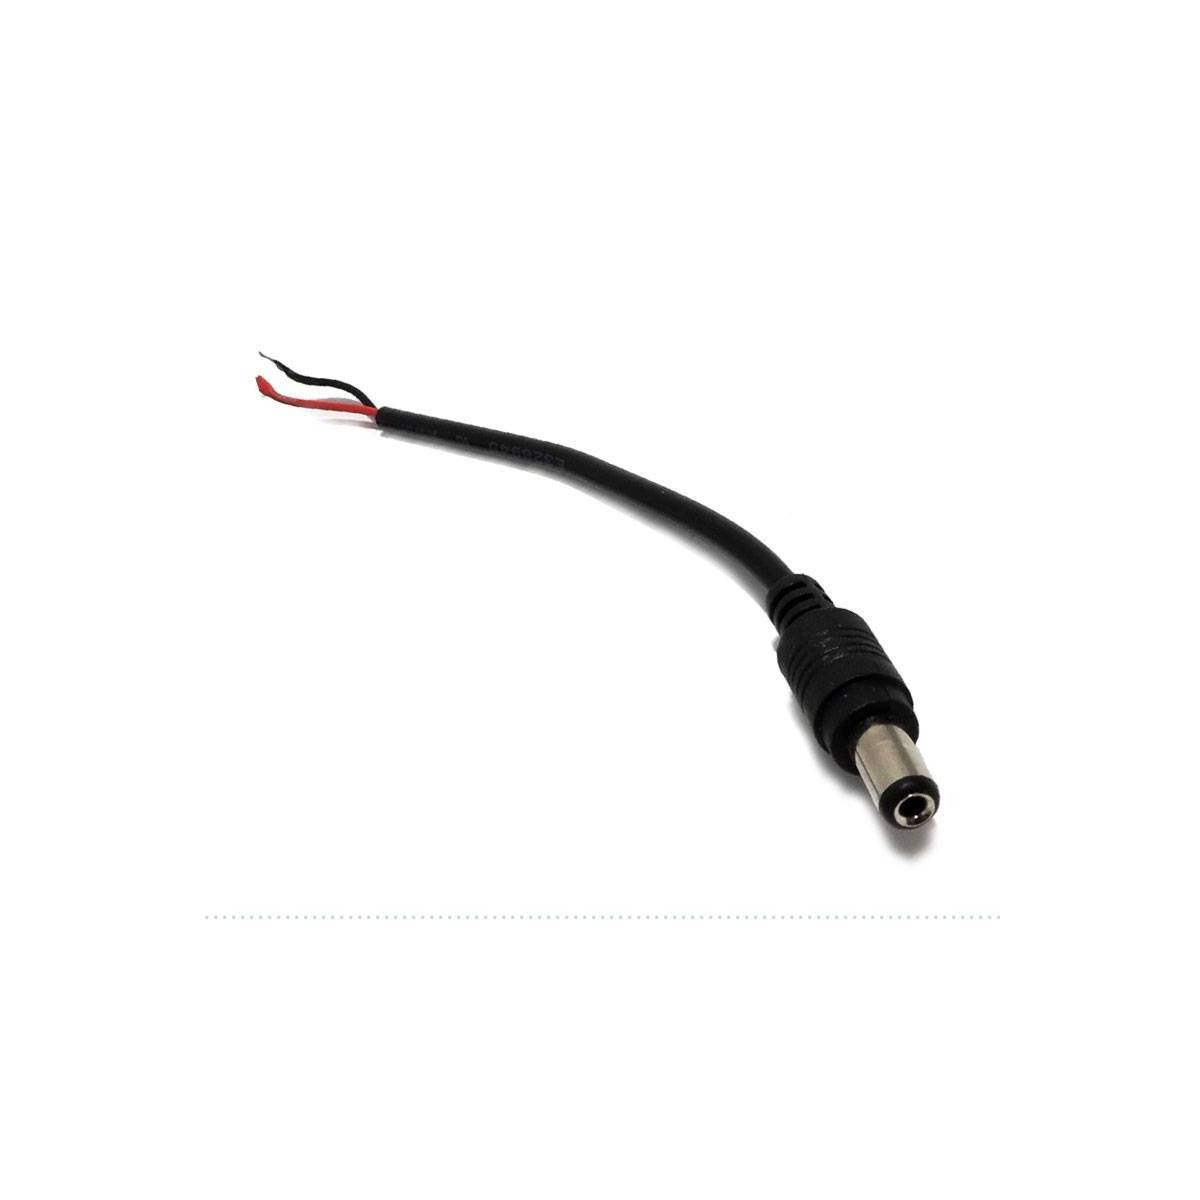 RCA Stecker für einfarbige LED Streifen - Steckverbinder, Schnellanschluss, LED Strip